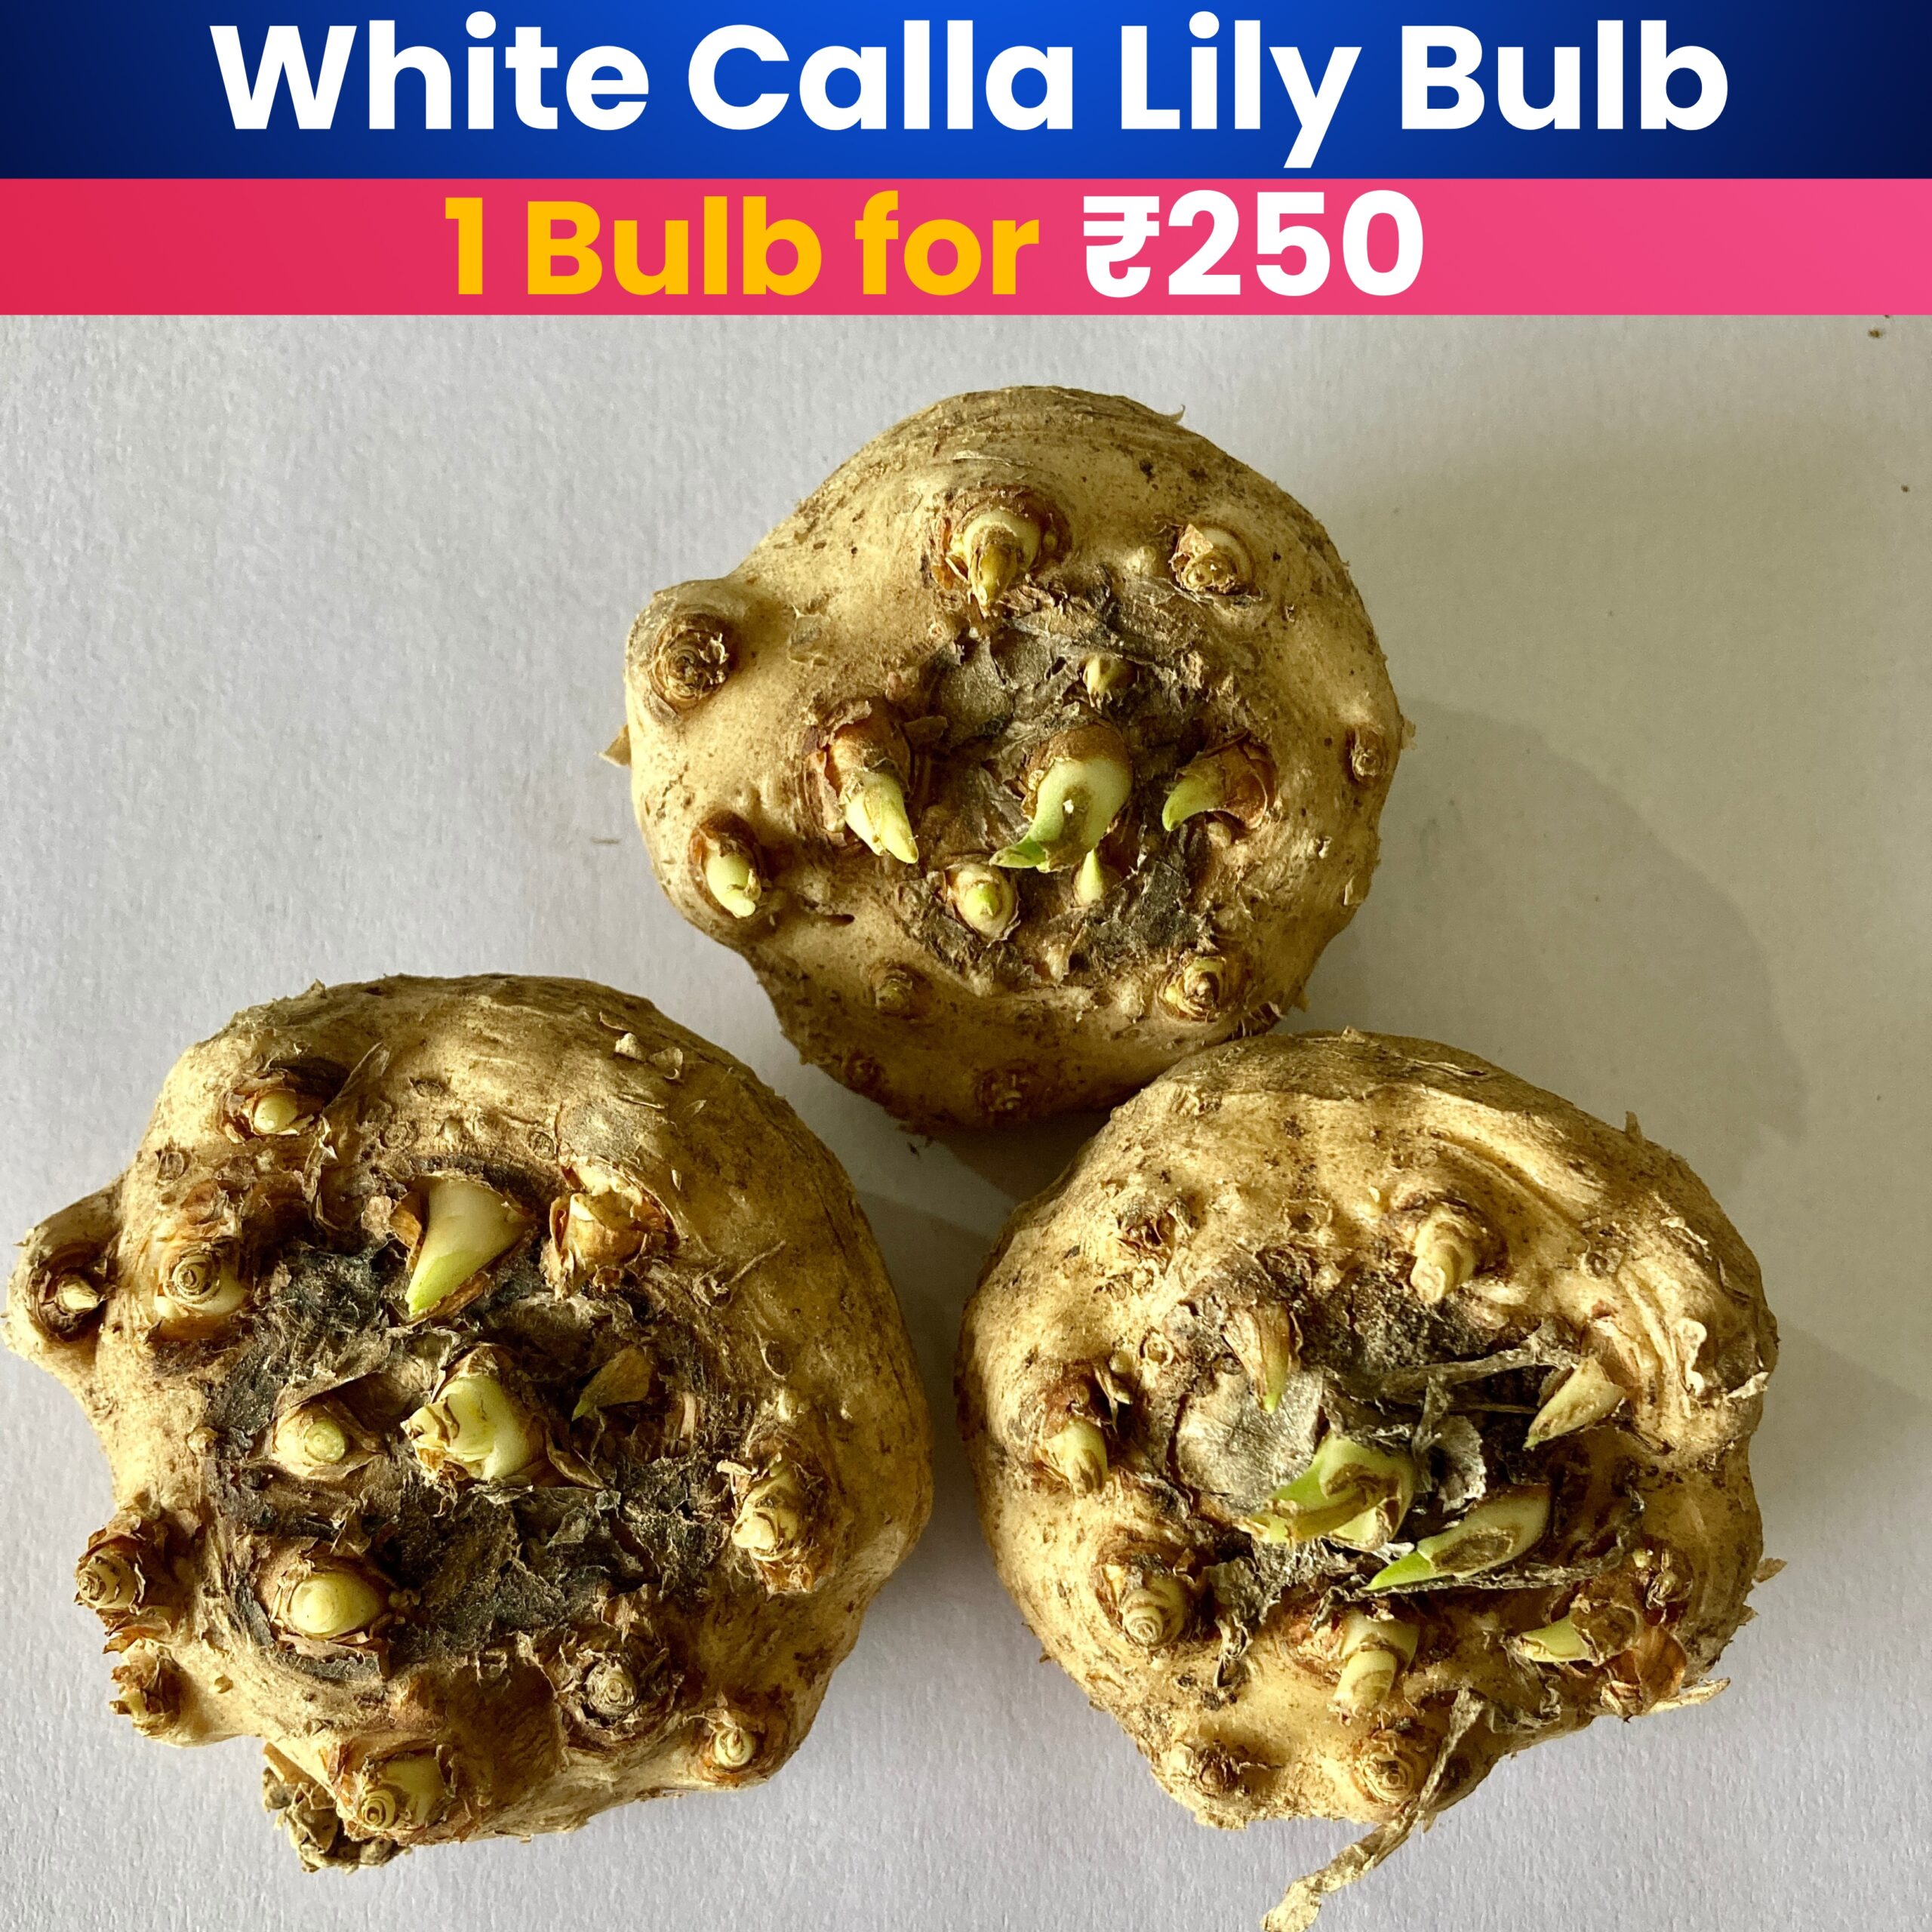 White Calla Lily Bulb